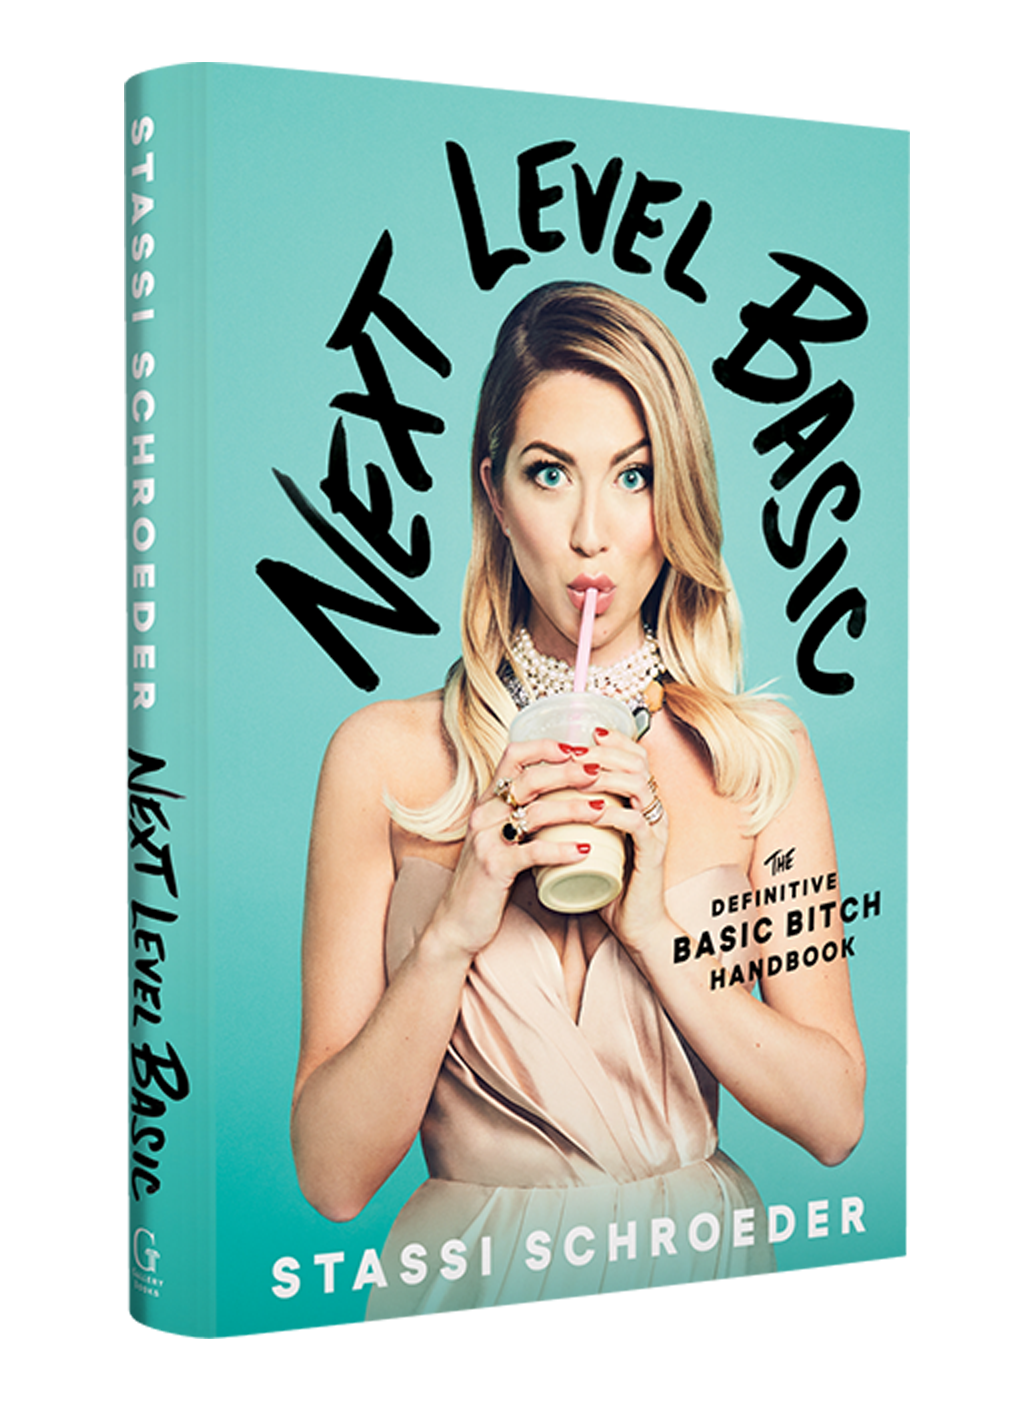 Next Level Basic: The Definitive Basic Bitch Handbook by Stassi Schroeder